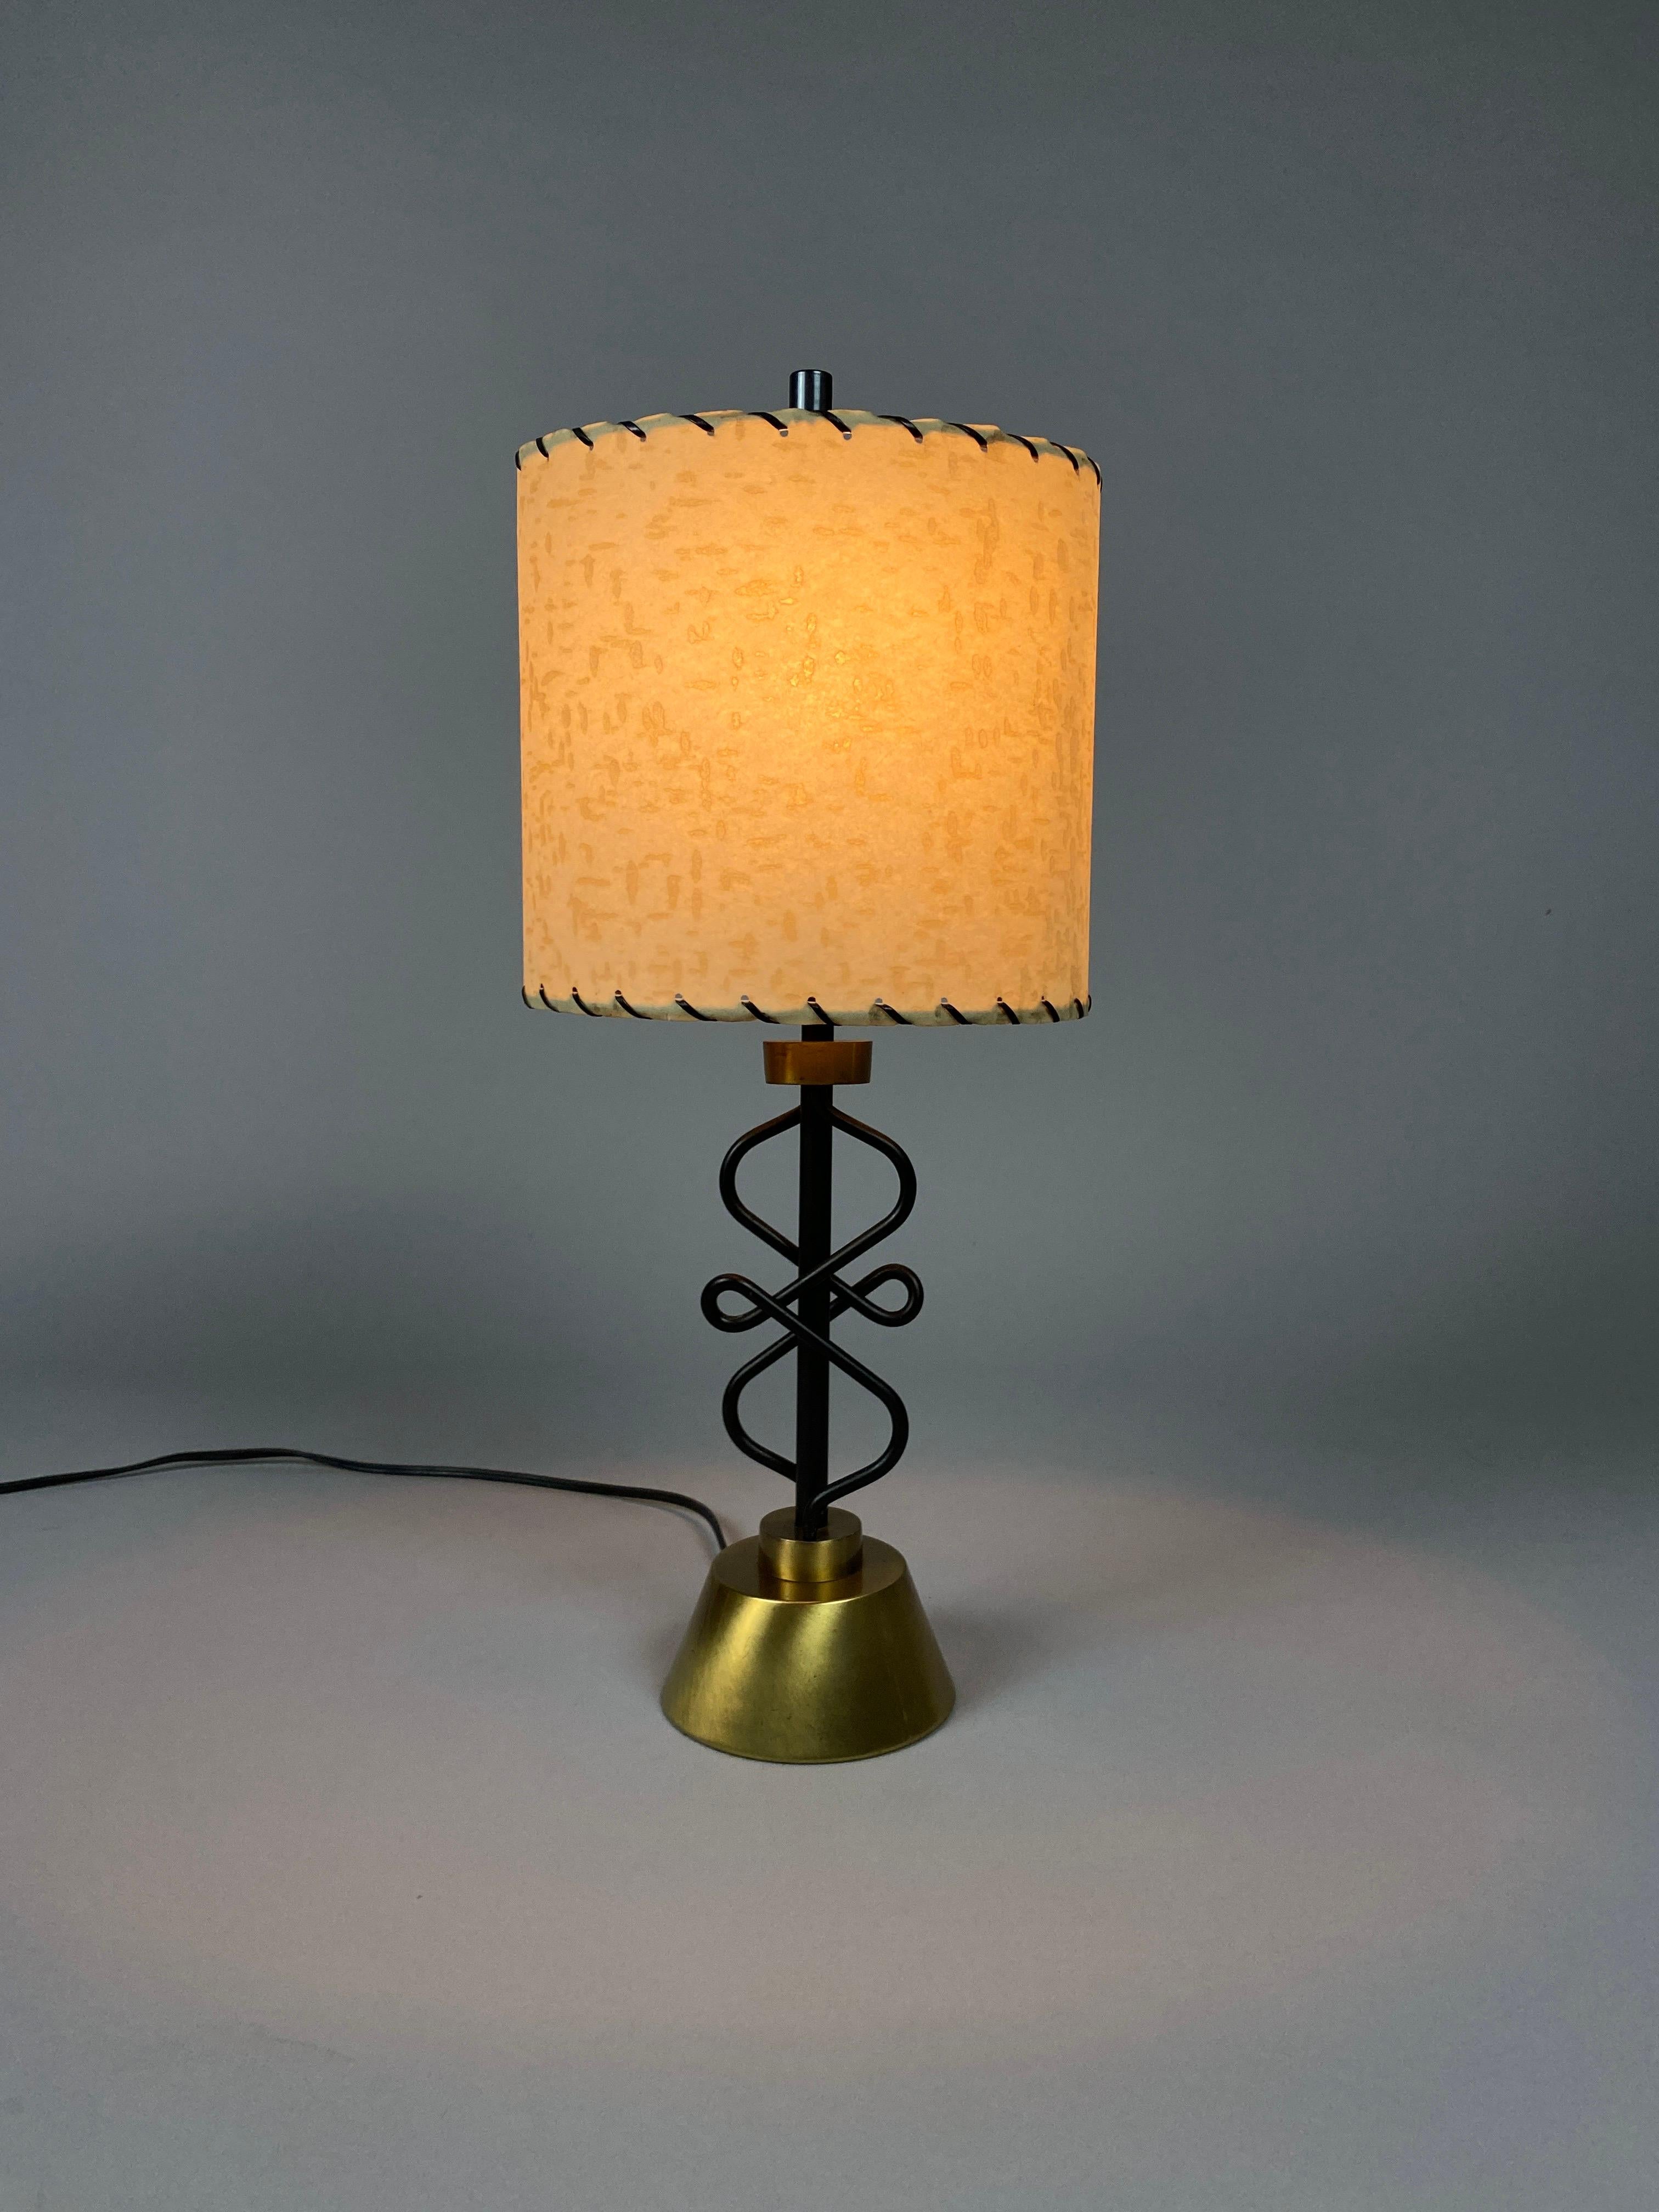 Voici un duo intemporel de sophistication et de charme : les lampes de table/de chevet Mid-Century de Majestic Lamp Co. Adoptez l'allure du design du milieu du siècle avec ces lampes exquises qui allient sans effort style, savoir-faire et